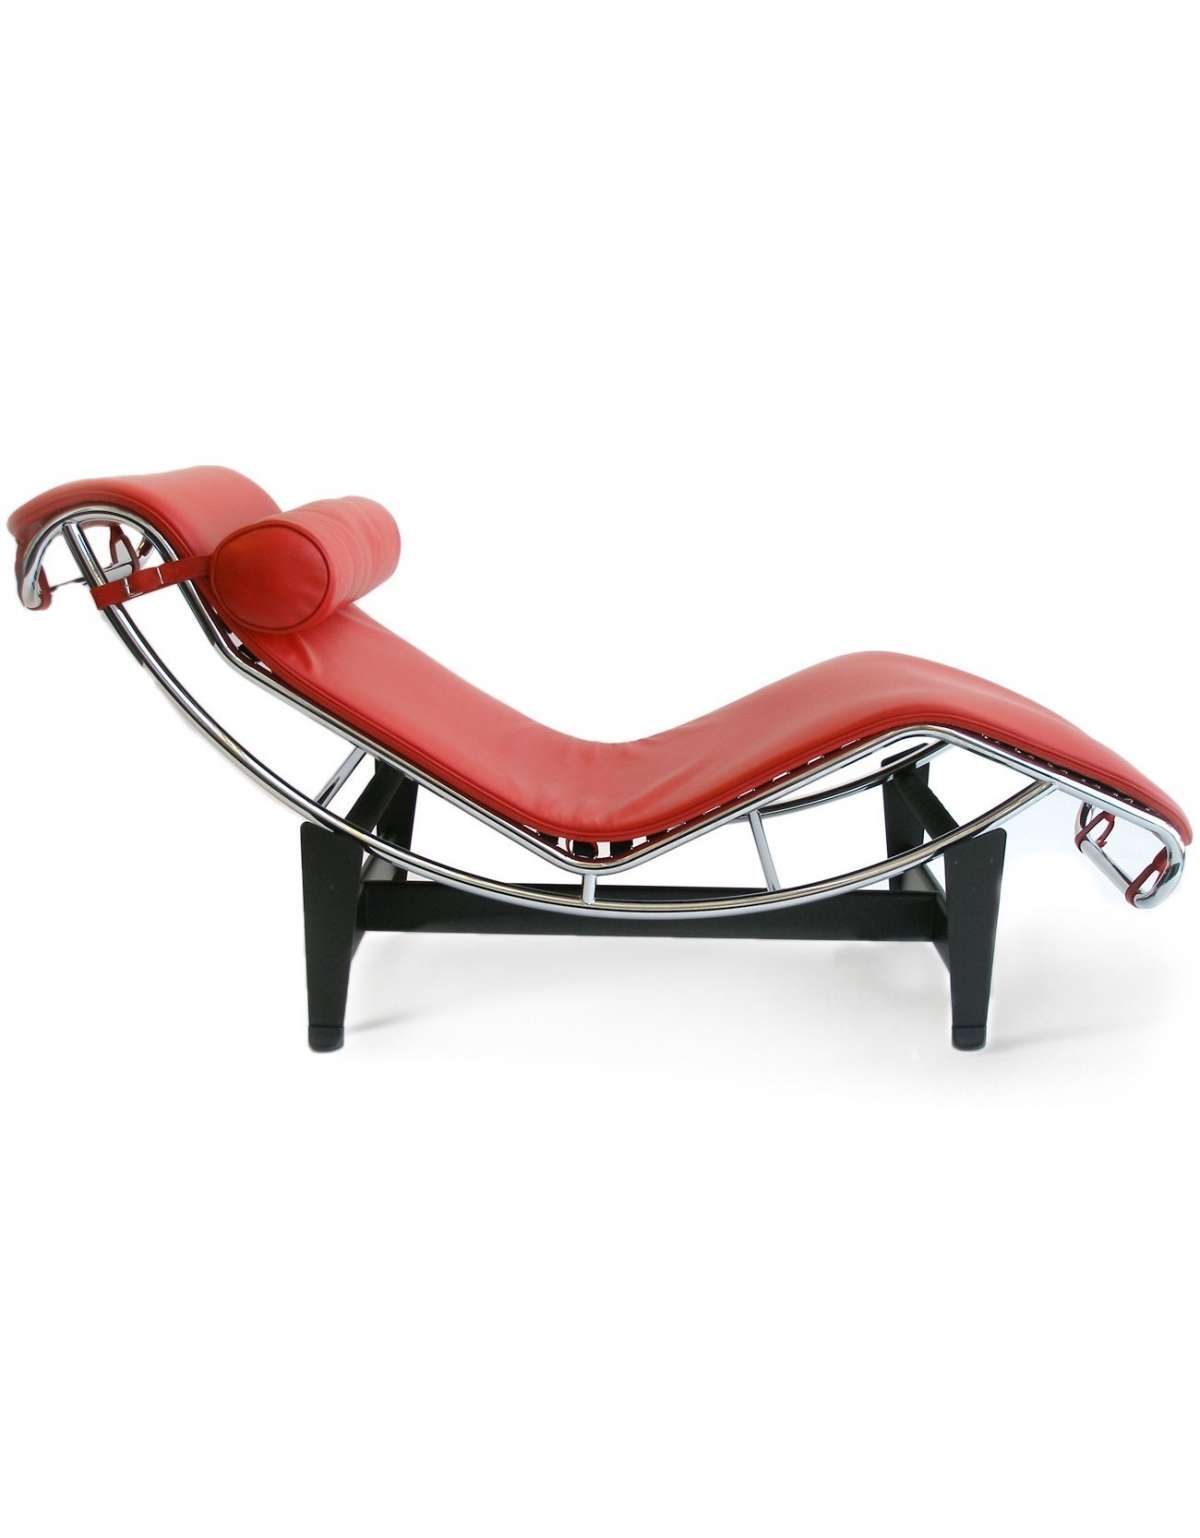 Chaise longue Le Corbusier rossa